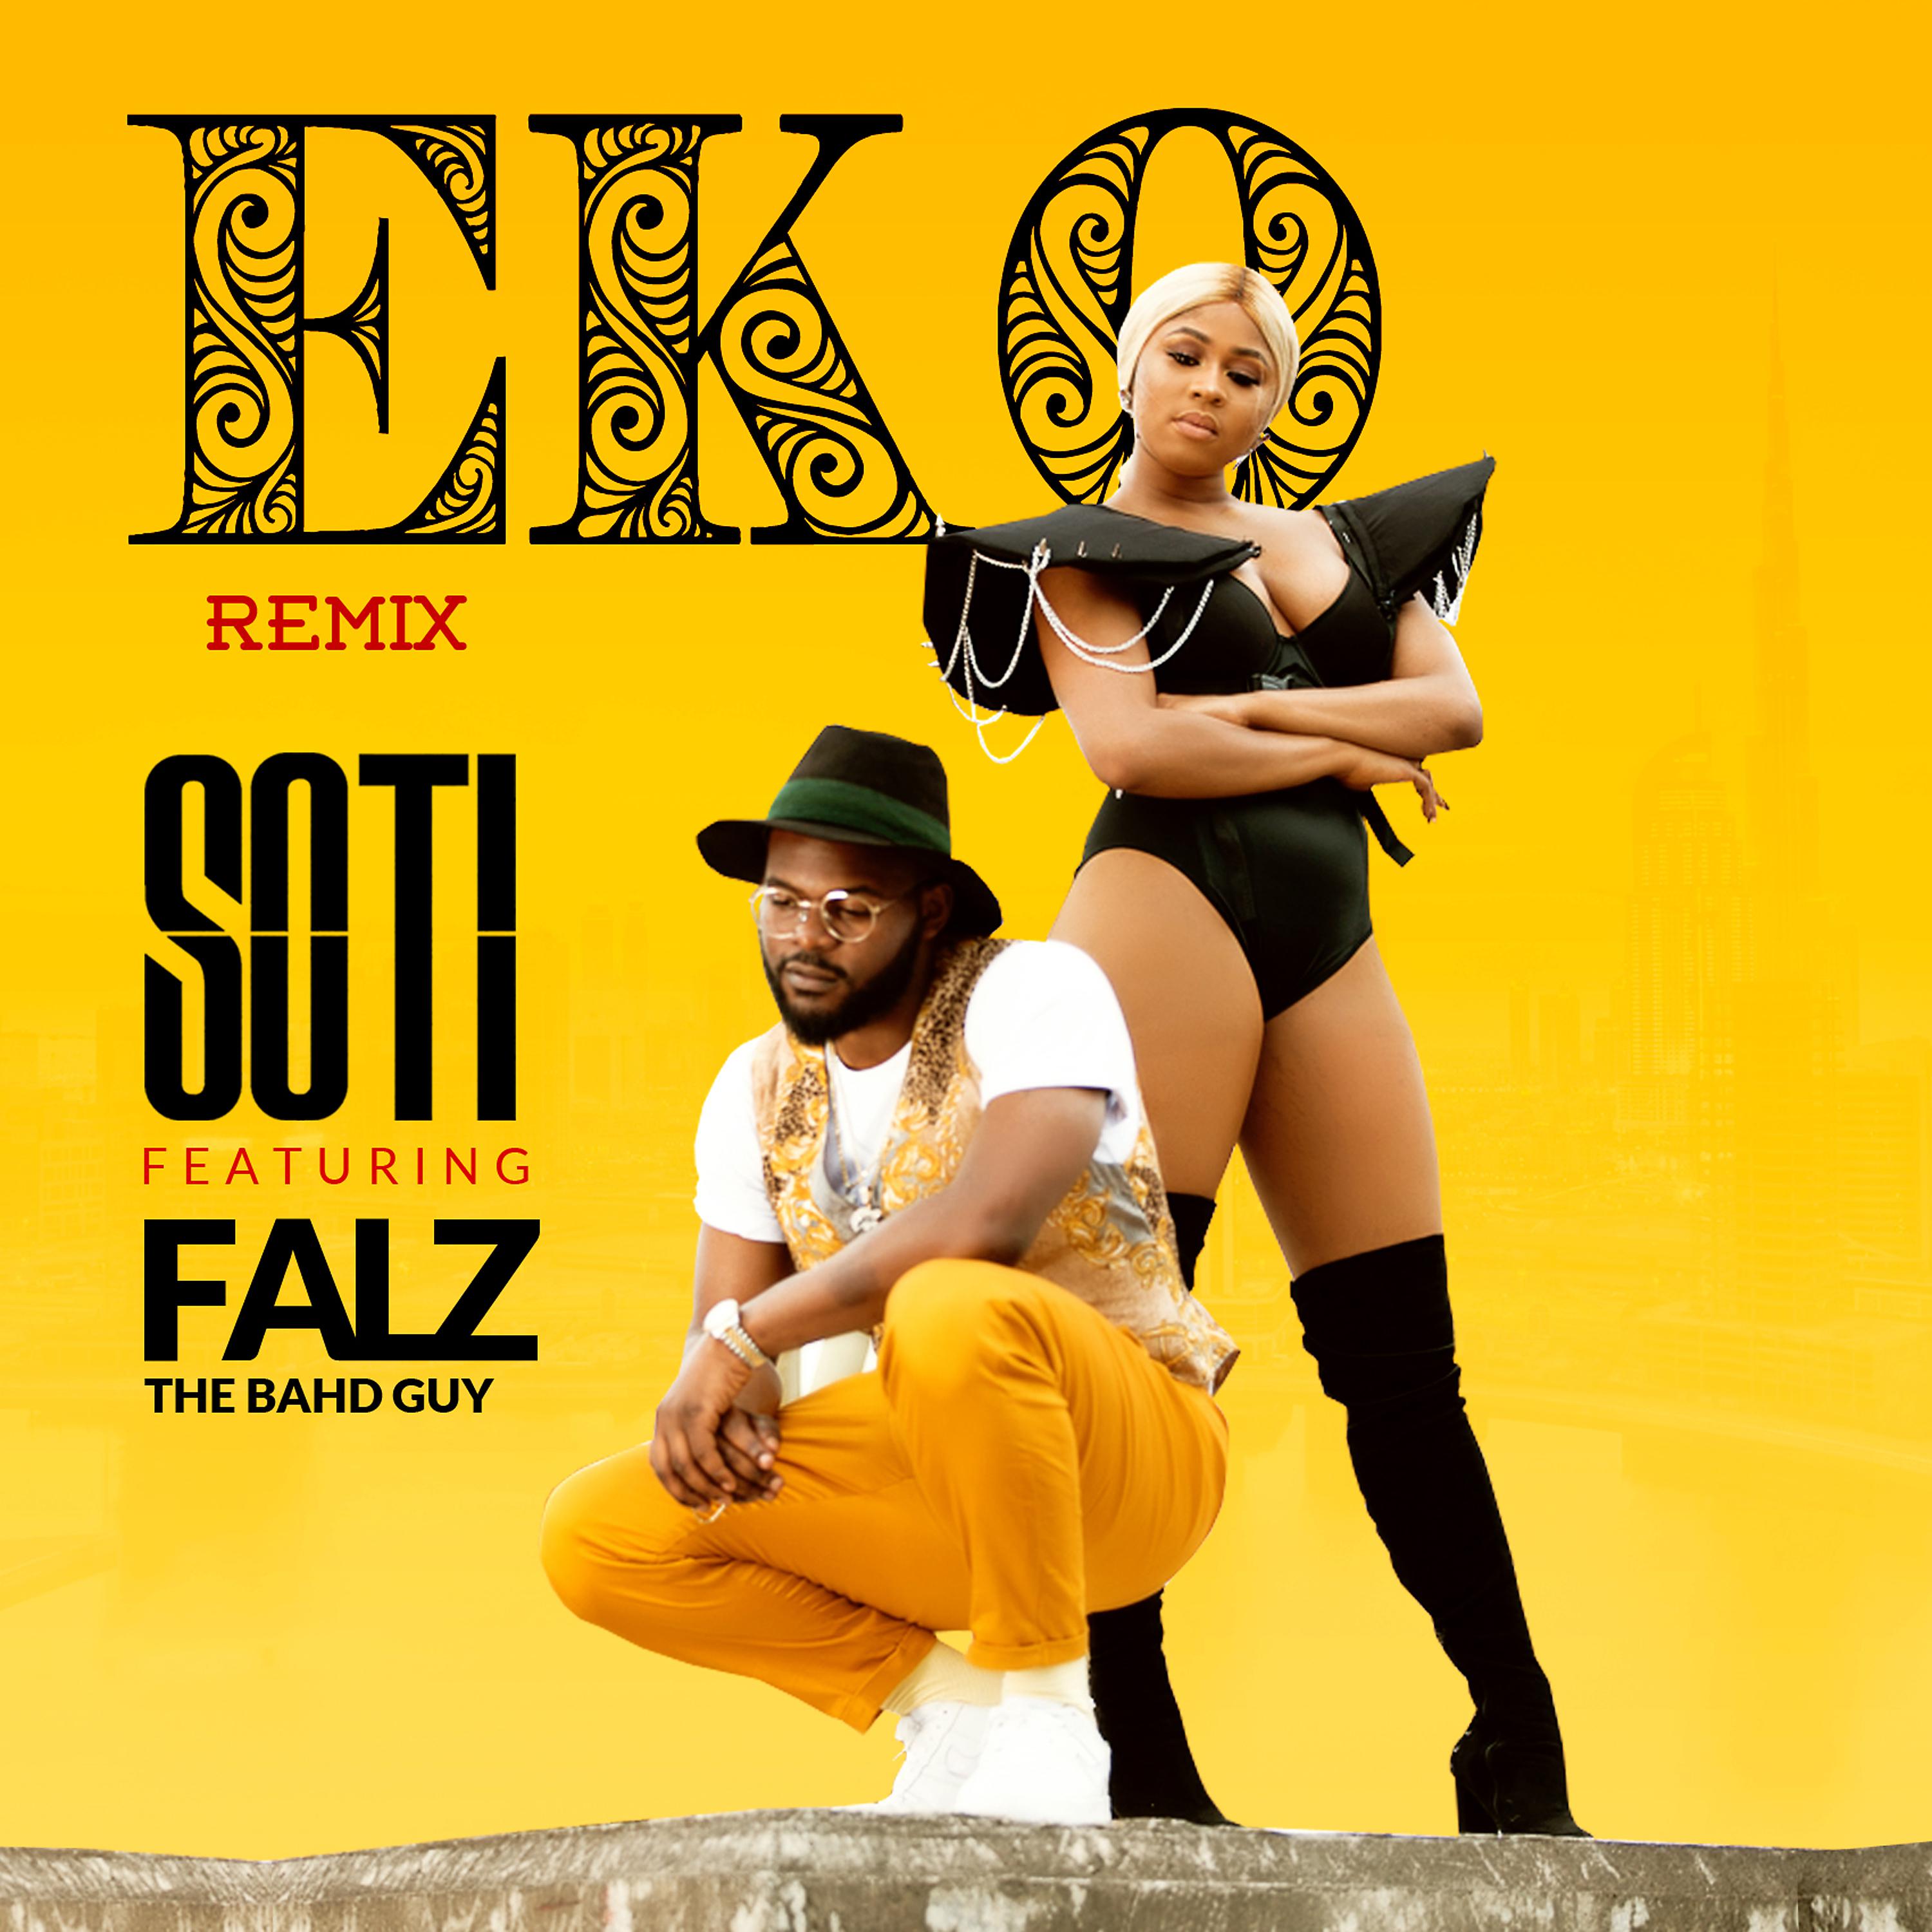 Постер альбома Eko